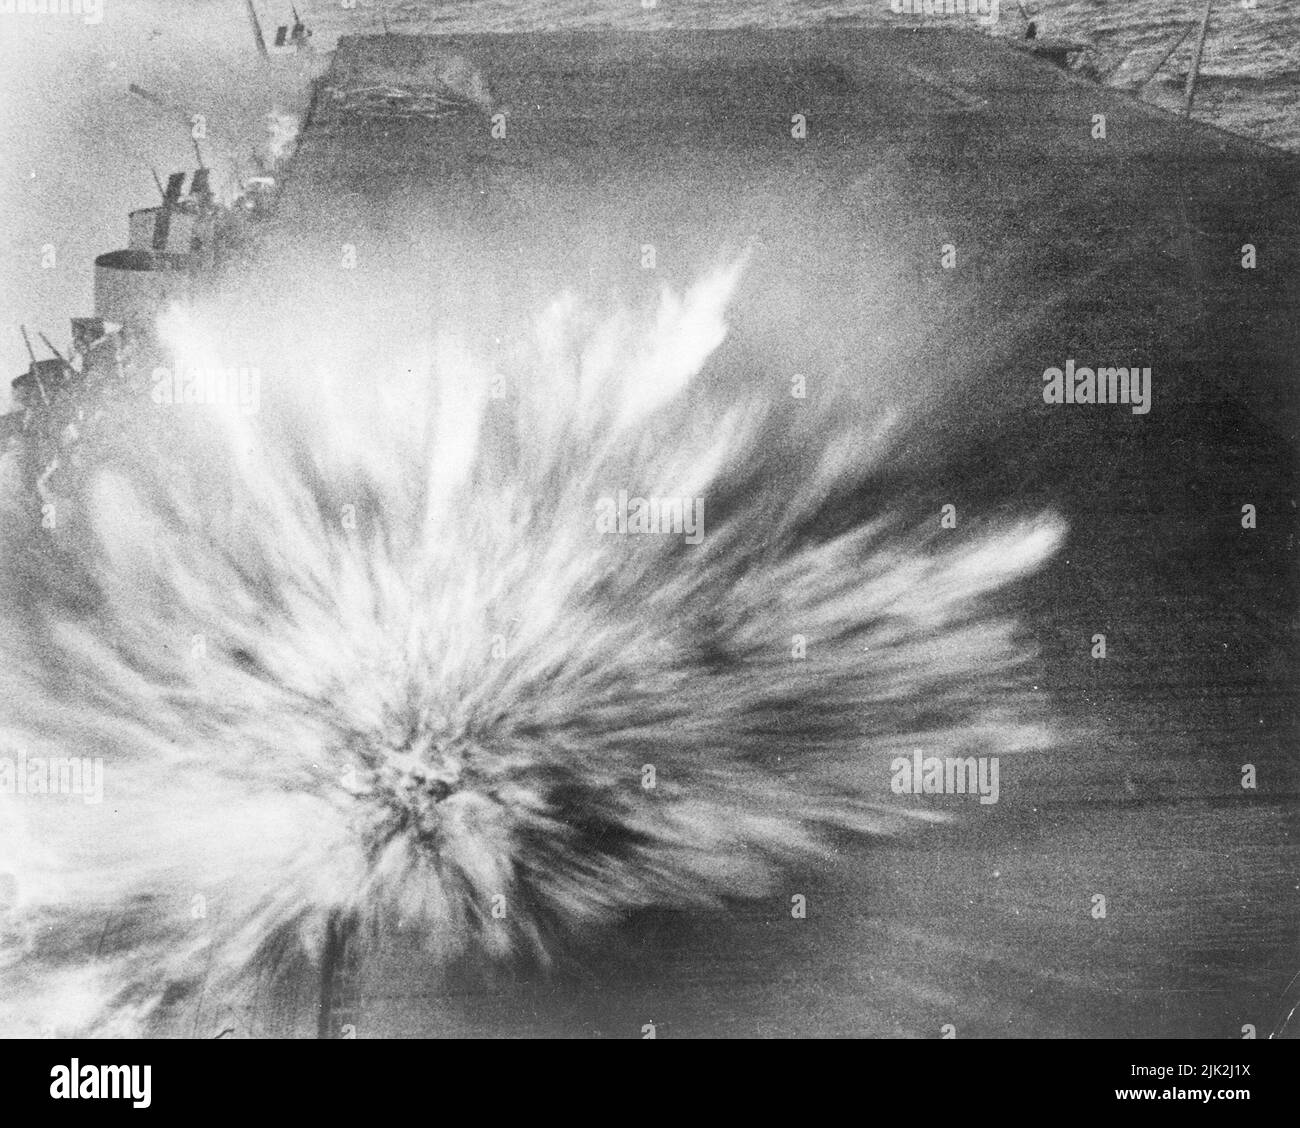 Photo prise lors d'une attaque japonaise sur l'USS Enterprise, dans l'après-midi du 24 août 1942. La bombe japonaise a frappé le pont de vol du porte-avions. L'image frappante montre le moment où la bombe explose. Malheureusement, le photographe a perdu la vie en prenant des photos. Banque D'Images